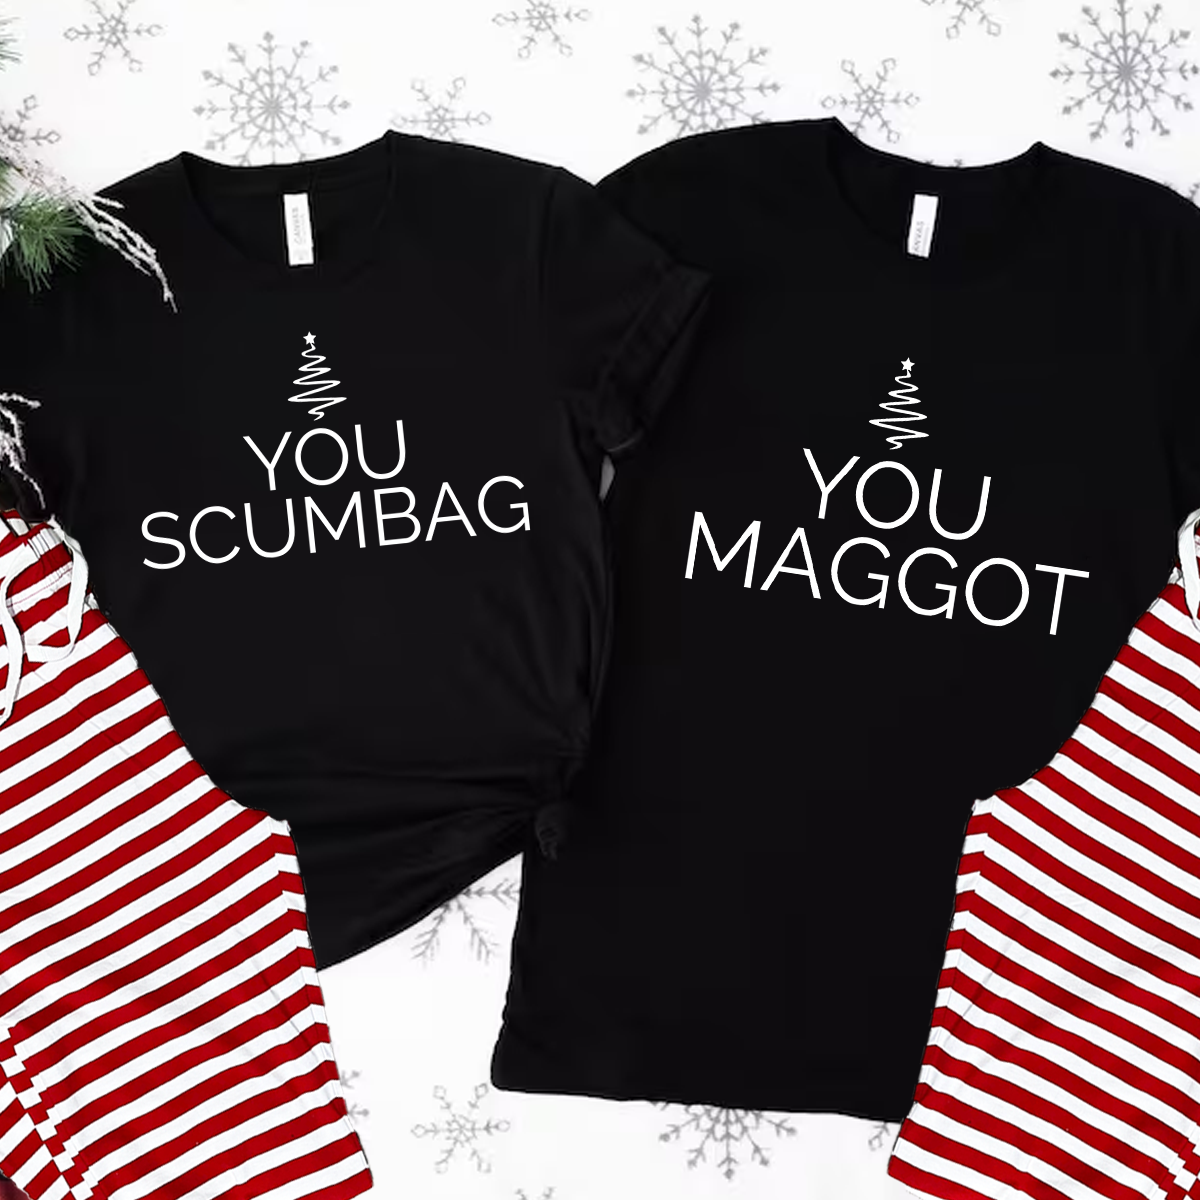 You Scumbag You Maggot Funny Matching Christmas T-Shirt